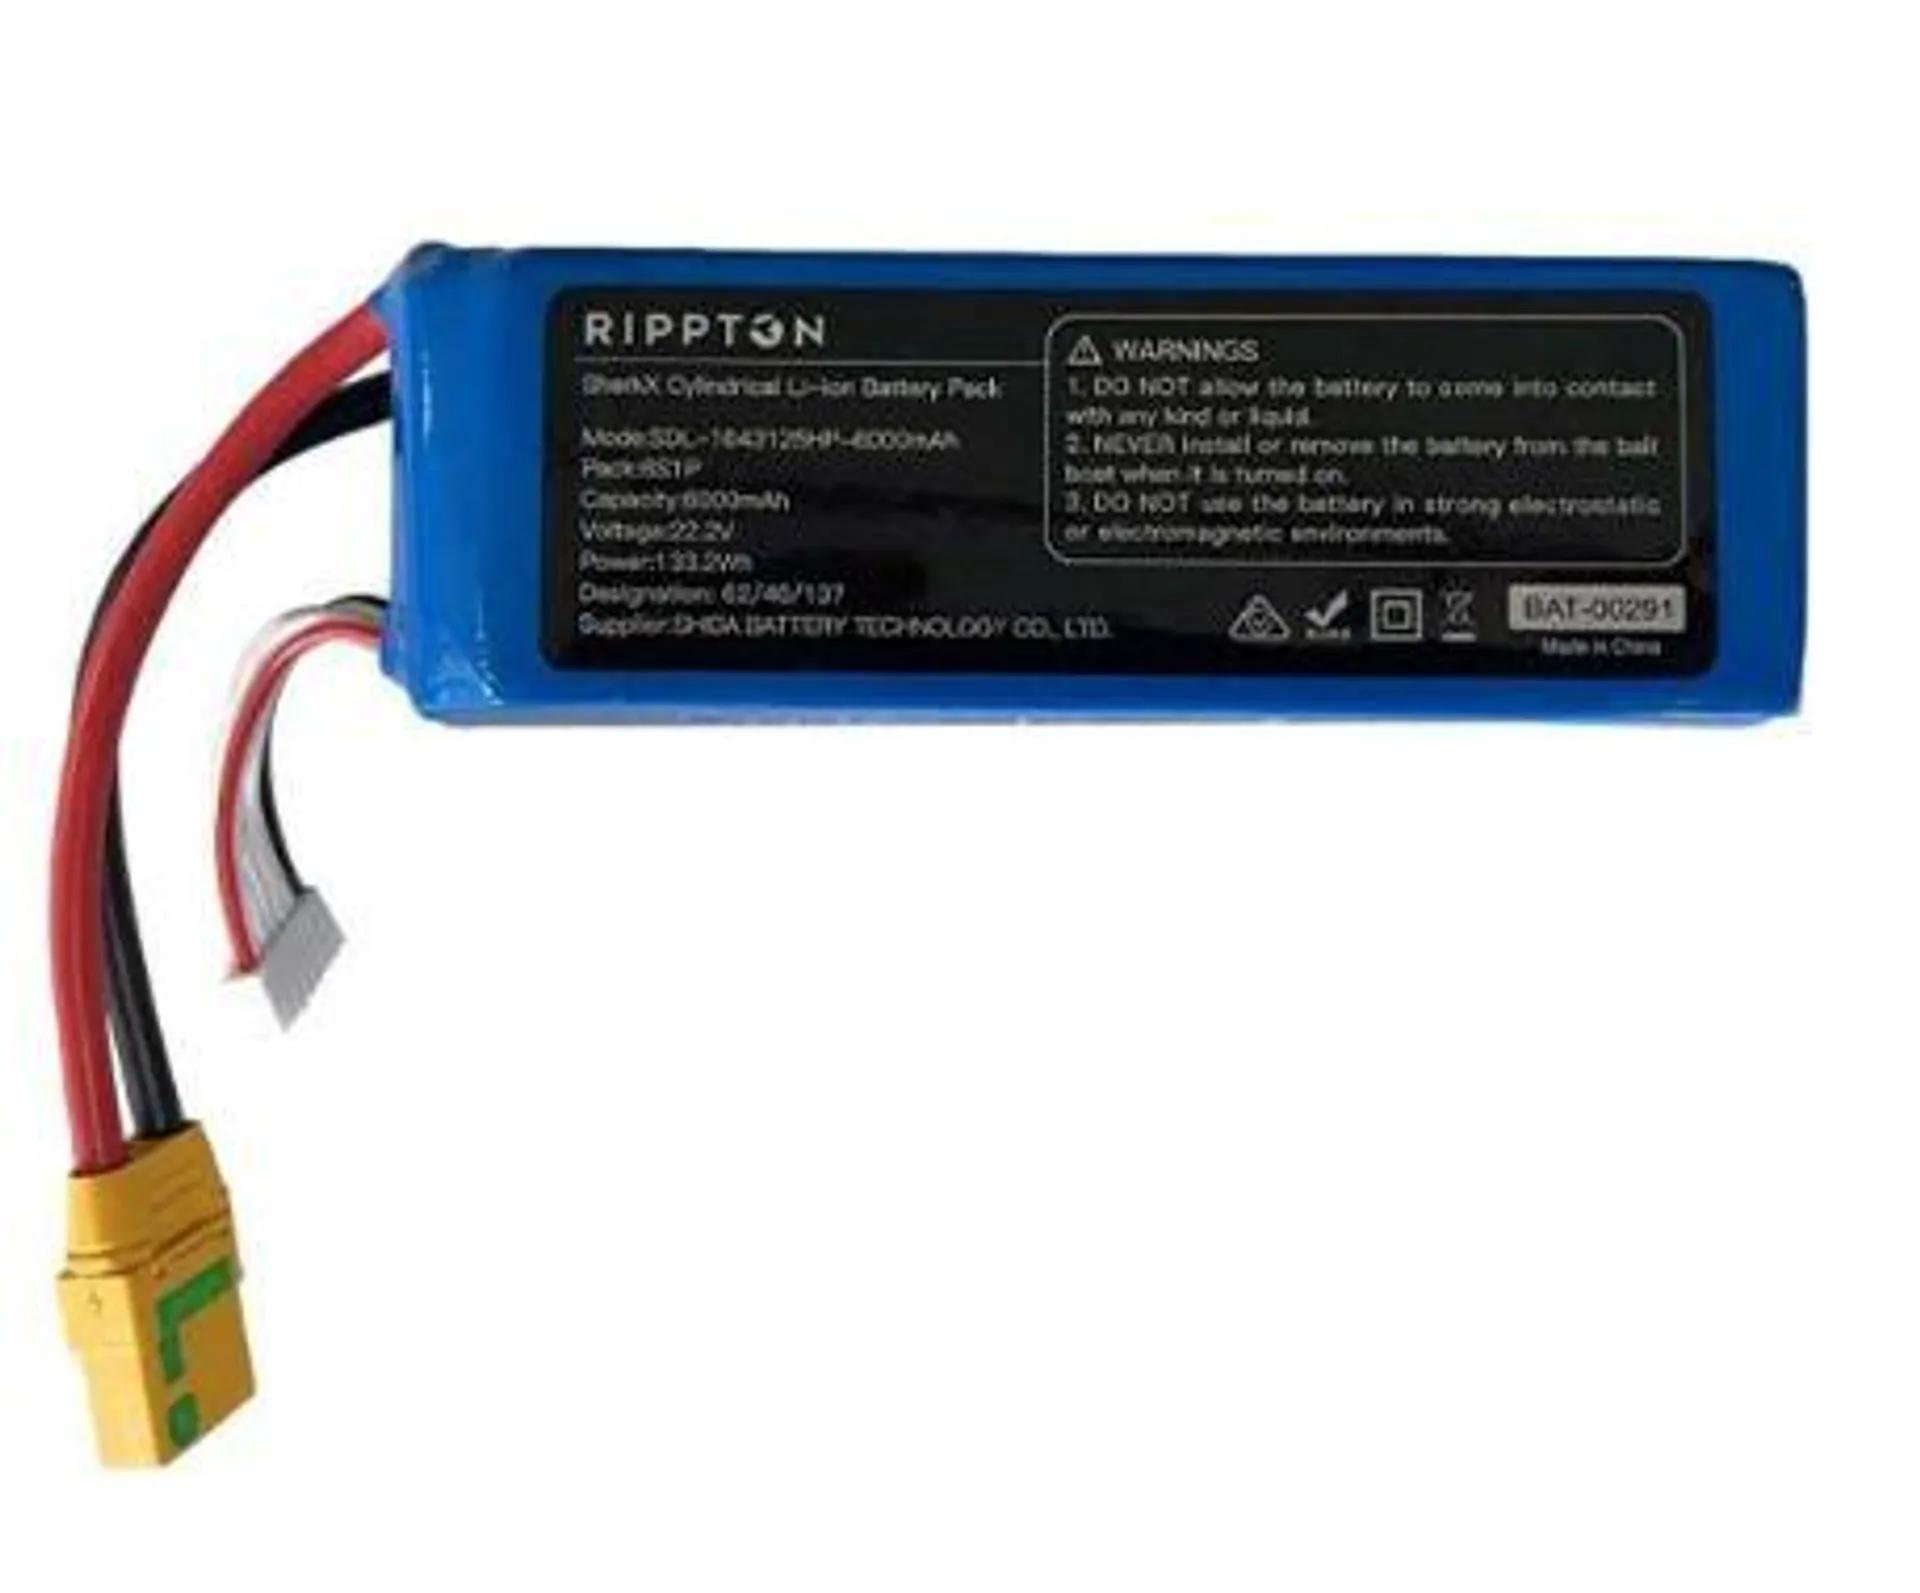 Rippton Shark X Battery